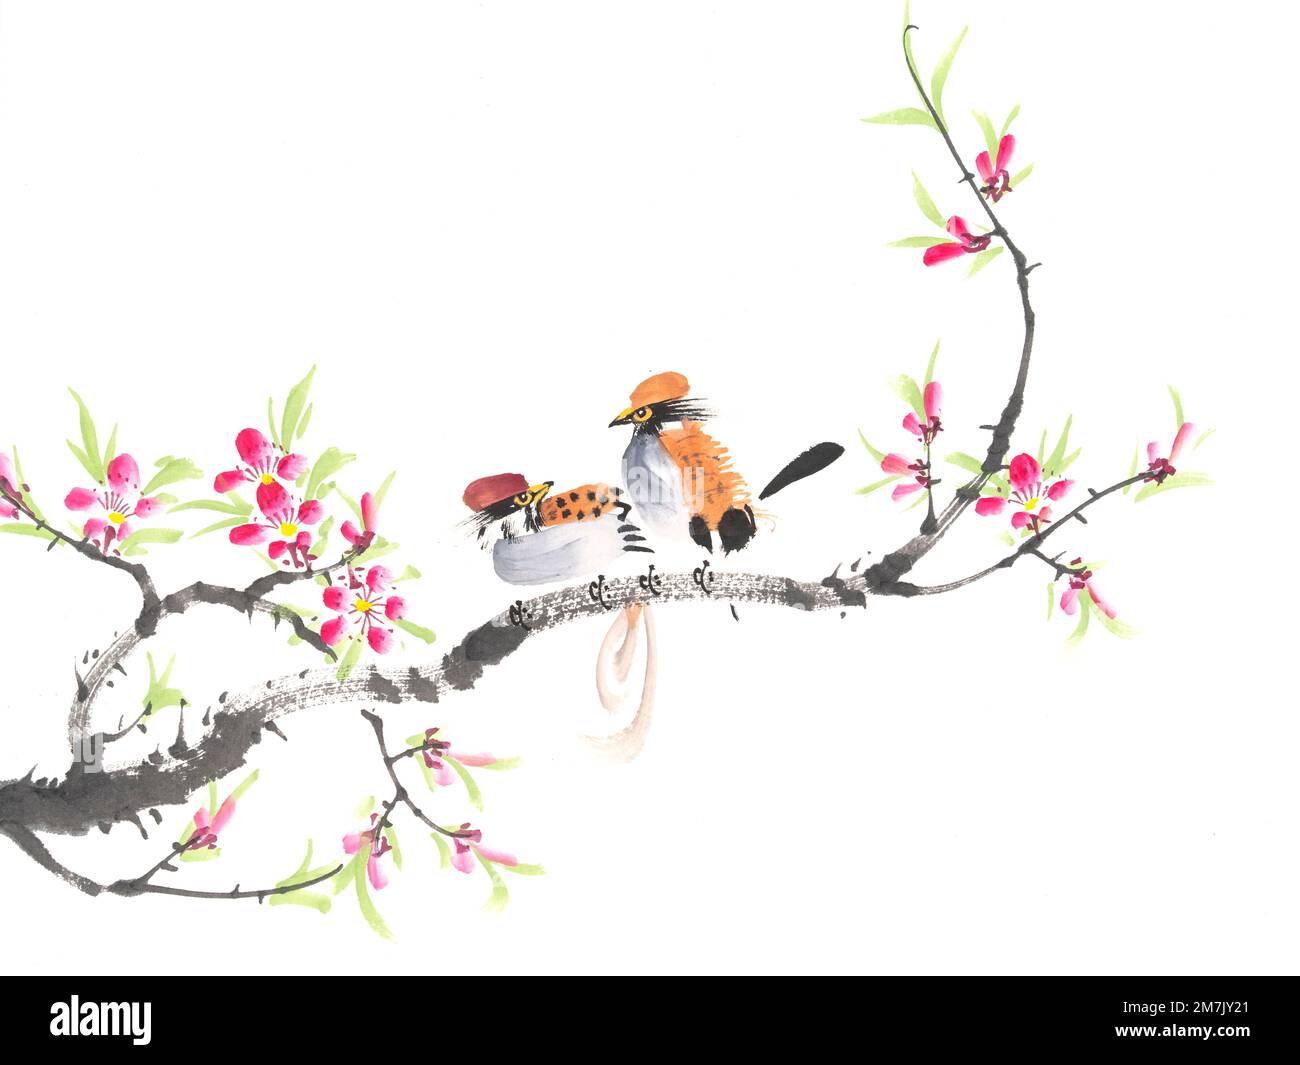 Peinture chinoise traditionnelle de fleurs et de deux oiseaux Banque D'Images